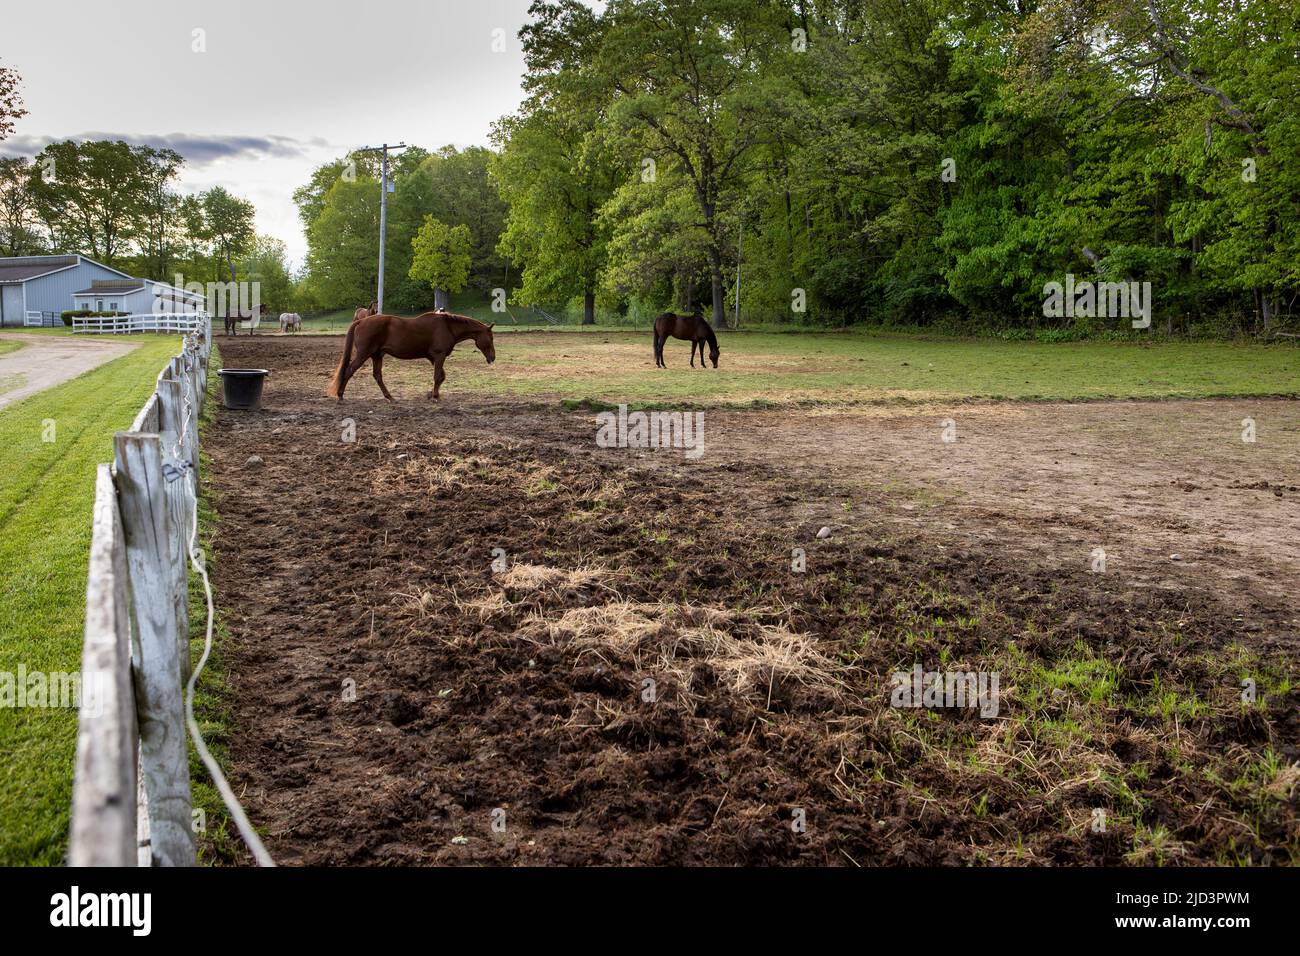 Caballos en un pasto en una granja de caballos. Foto de stock